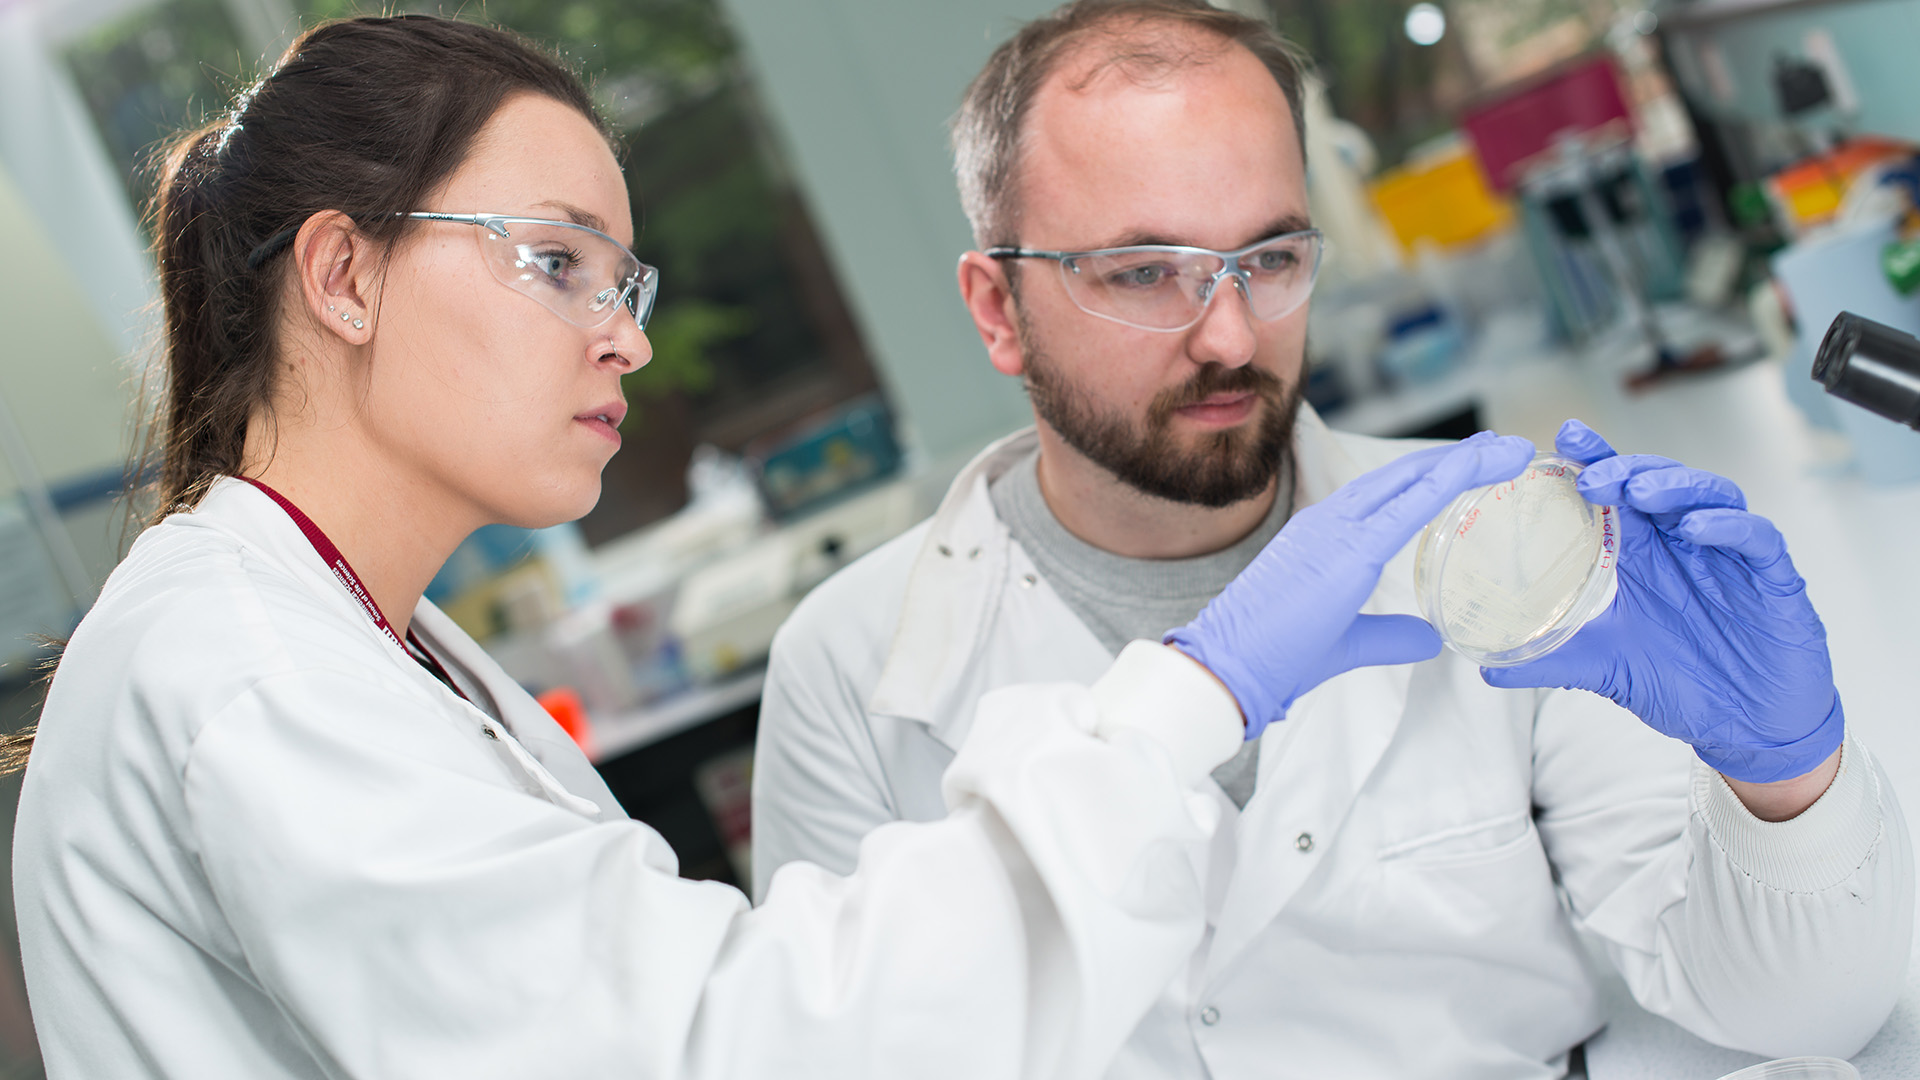 Biomedical science students examining a petri dish